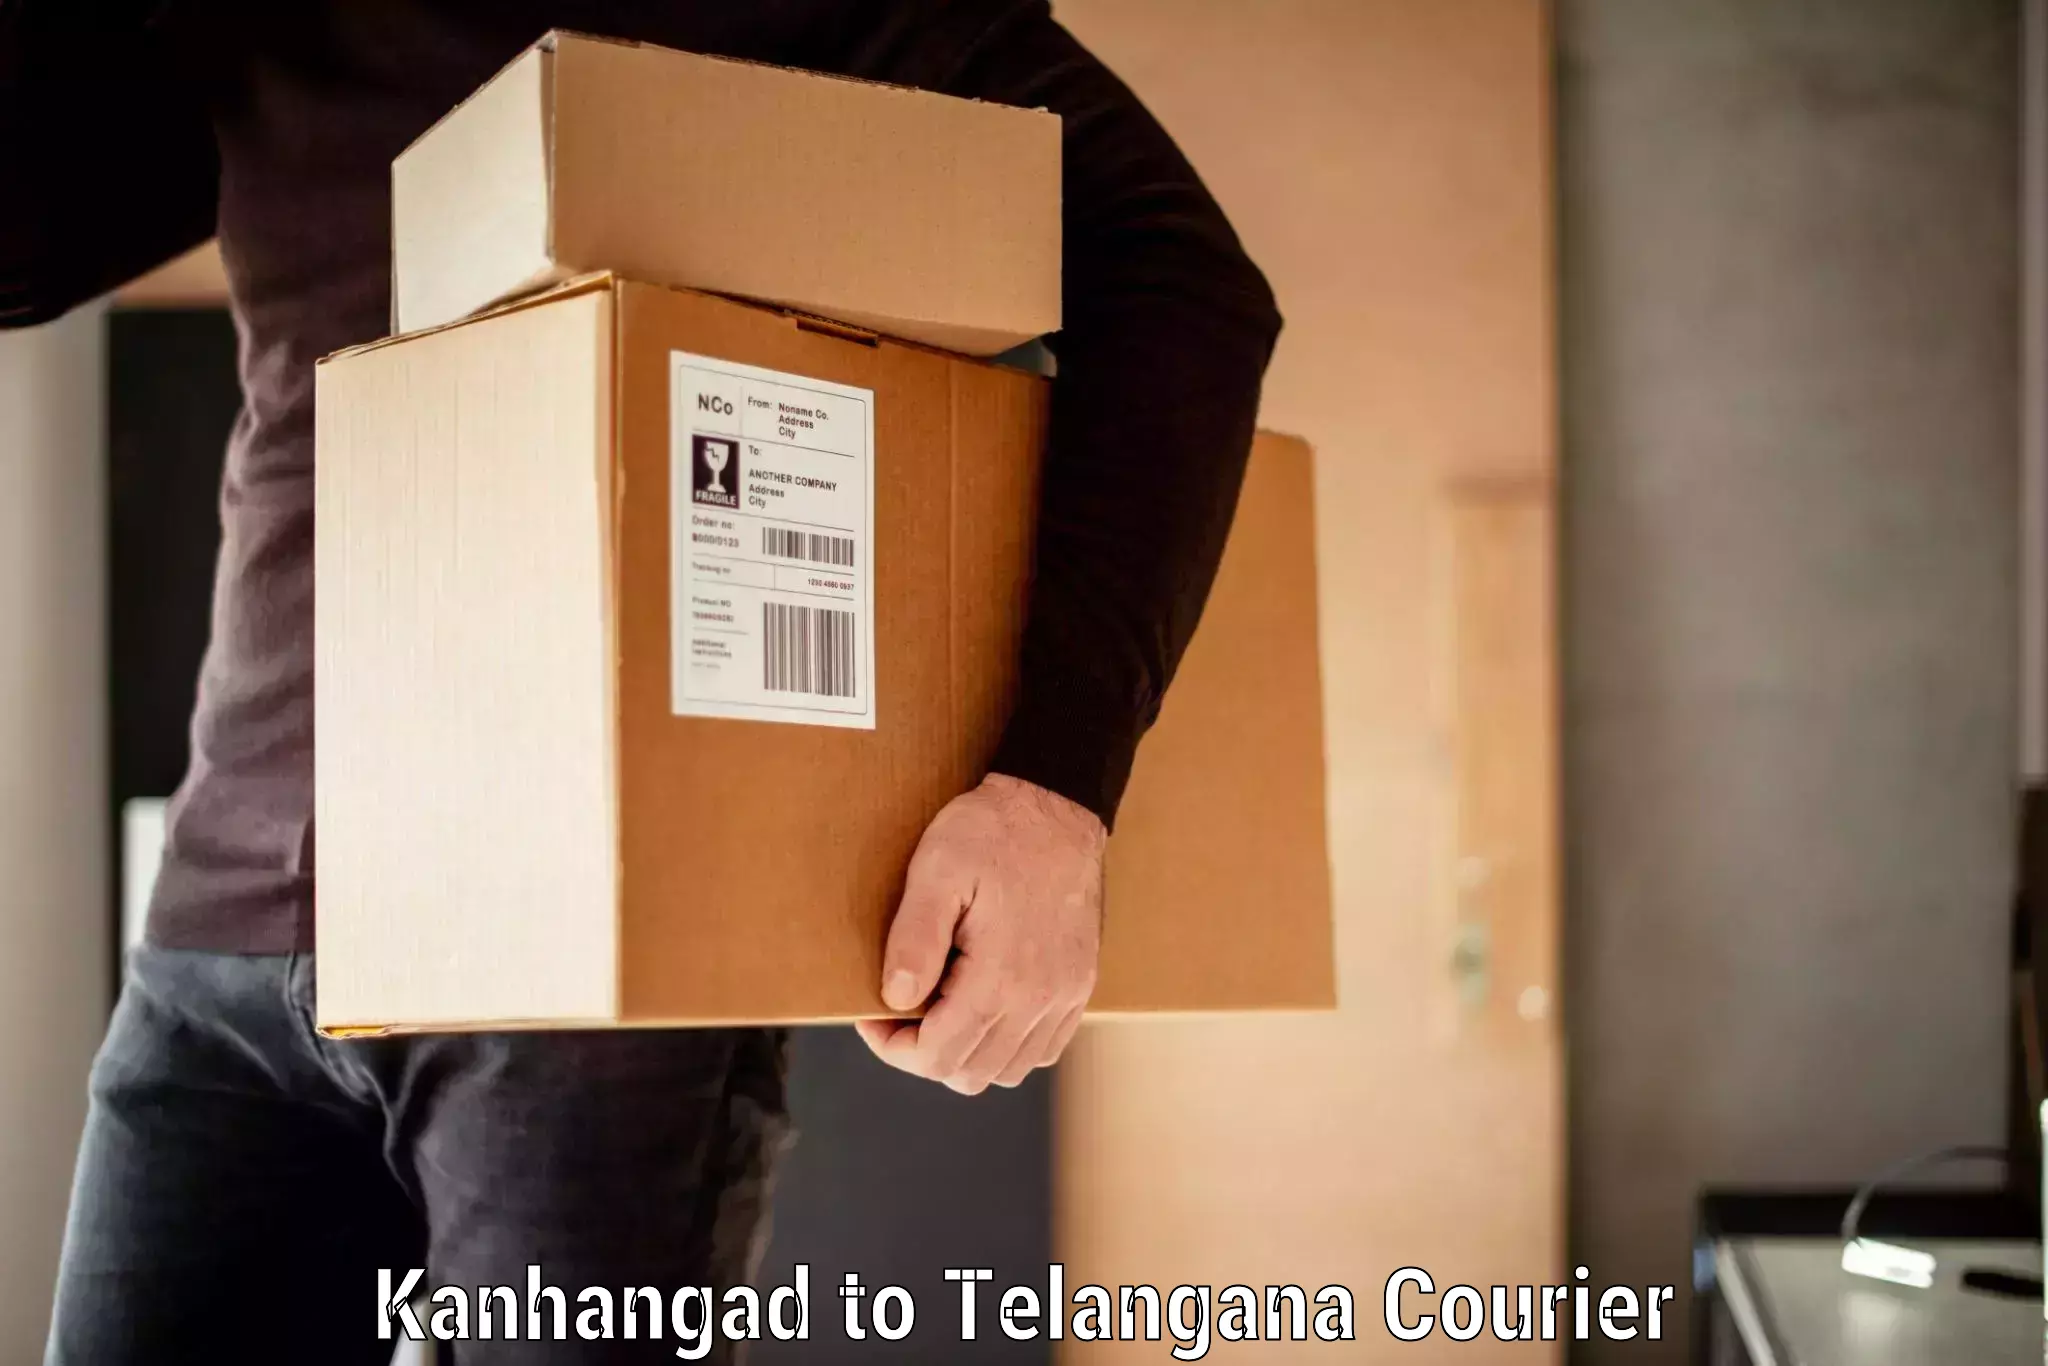 Baggage transport estimate Kanhangad to Bodhan